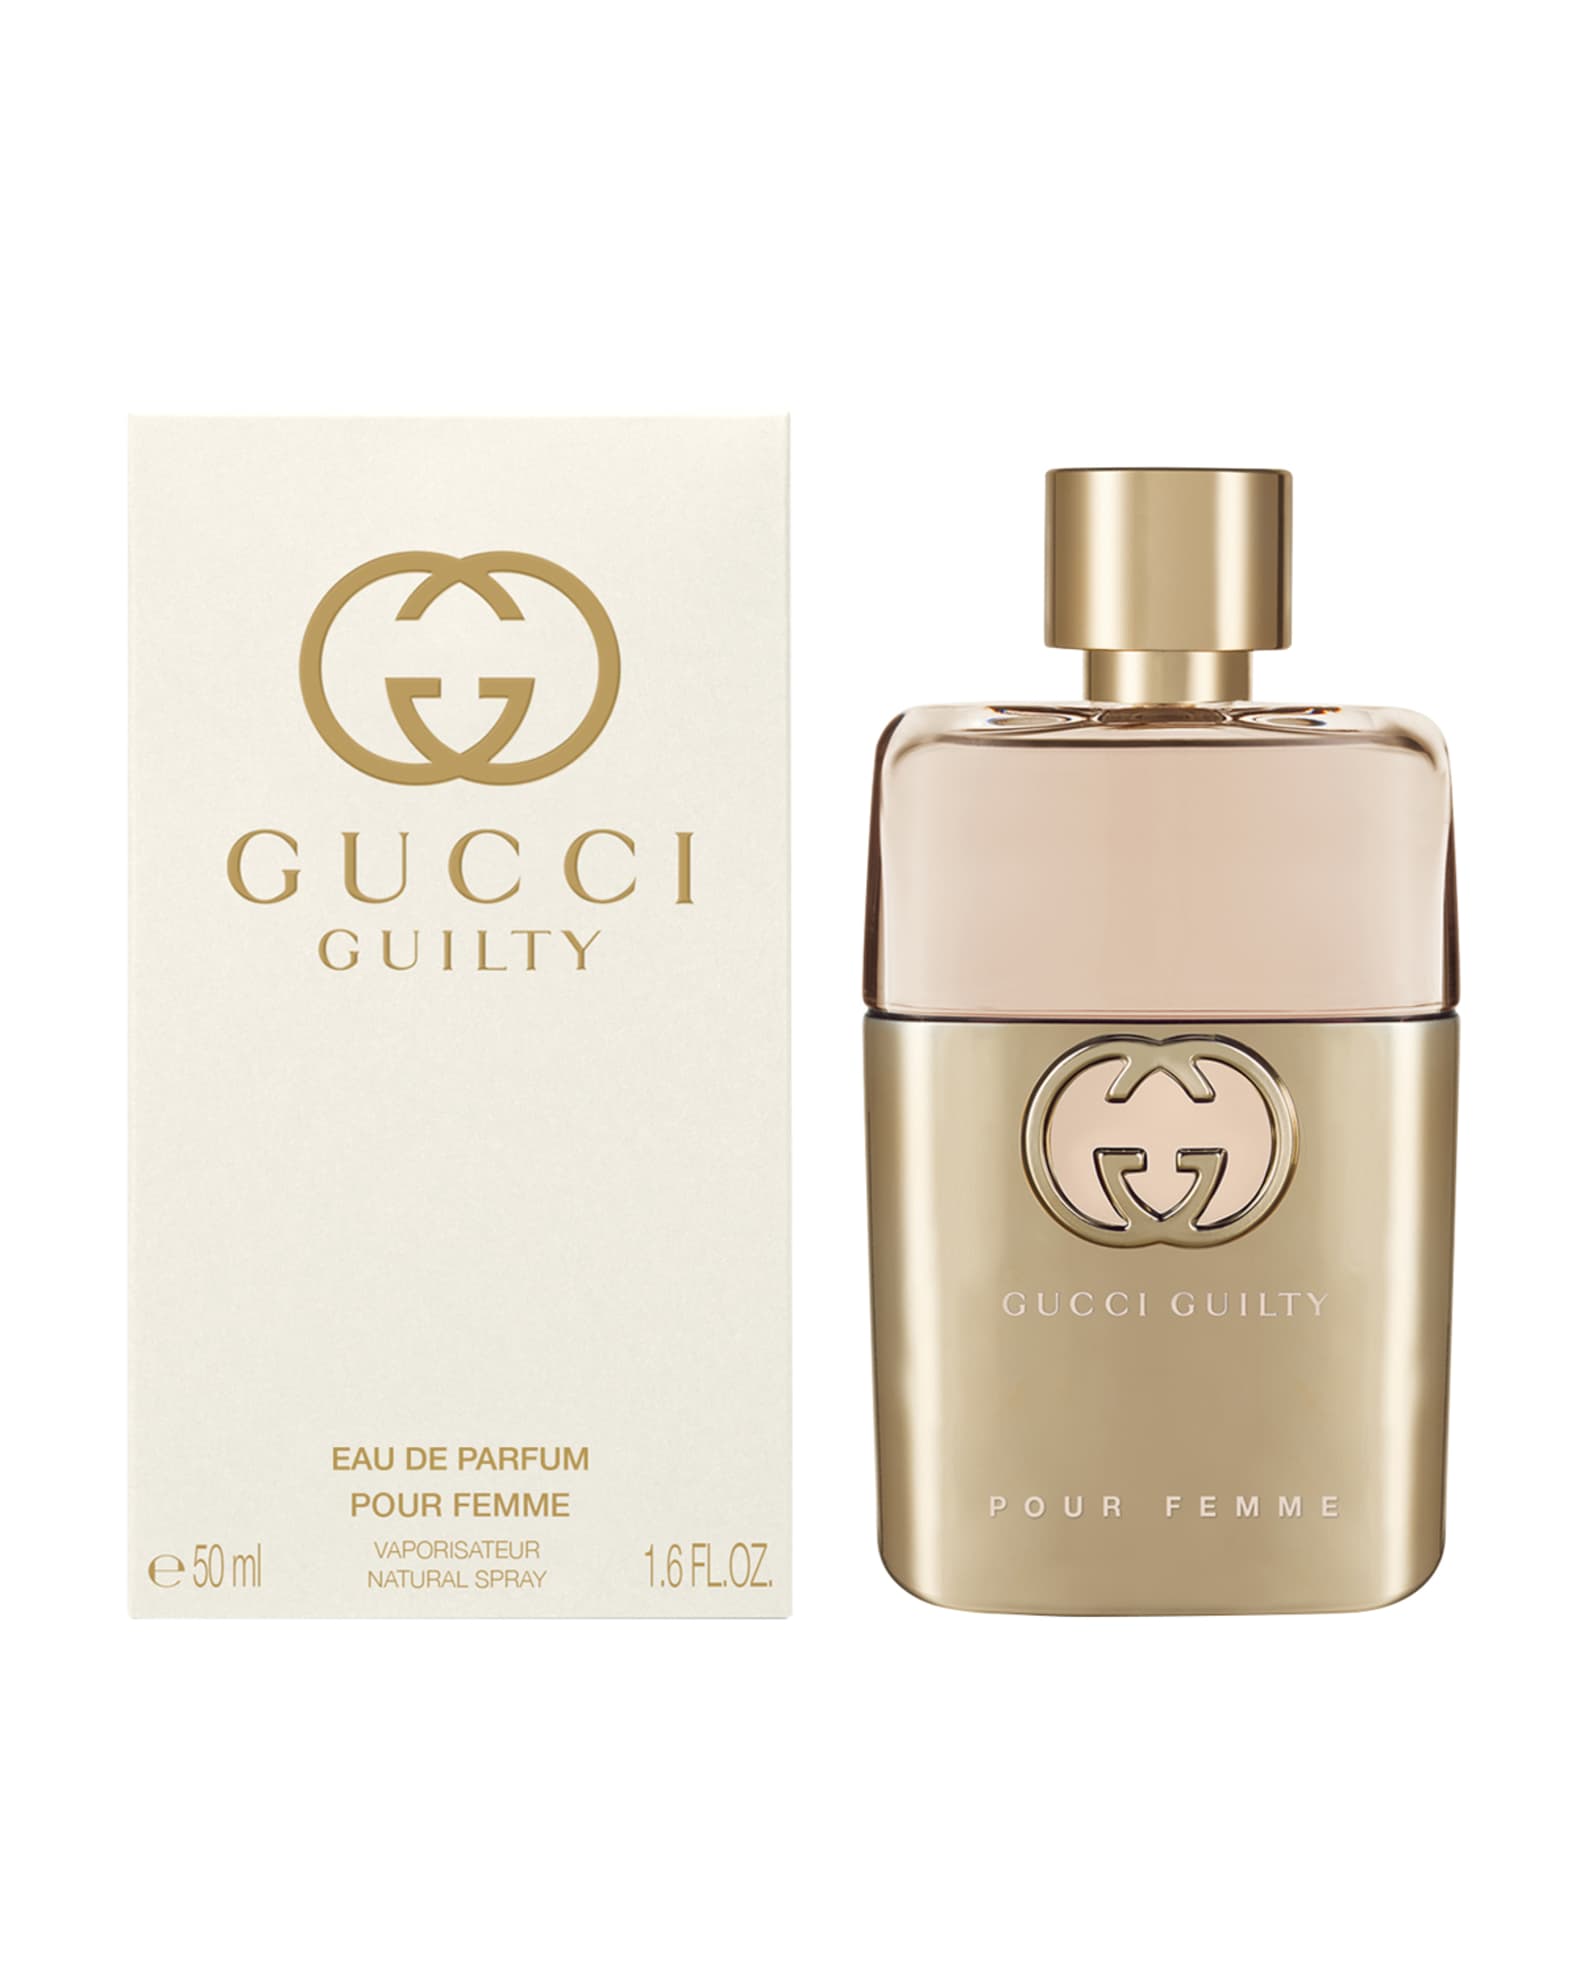 Gucci Guilty Pour Femme Eau de Parfum Spray by Gucci - 1.6 oz